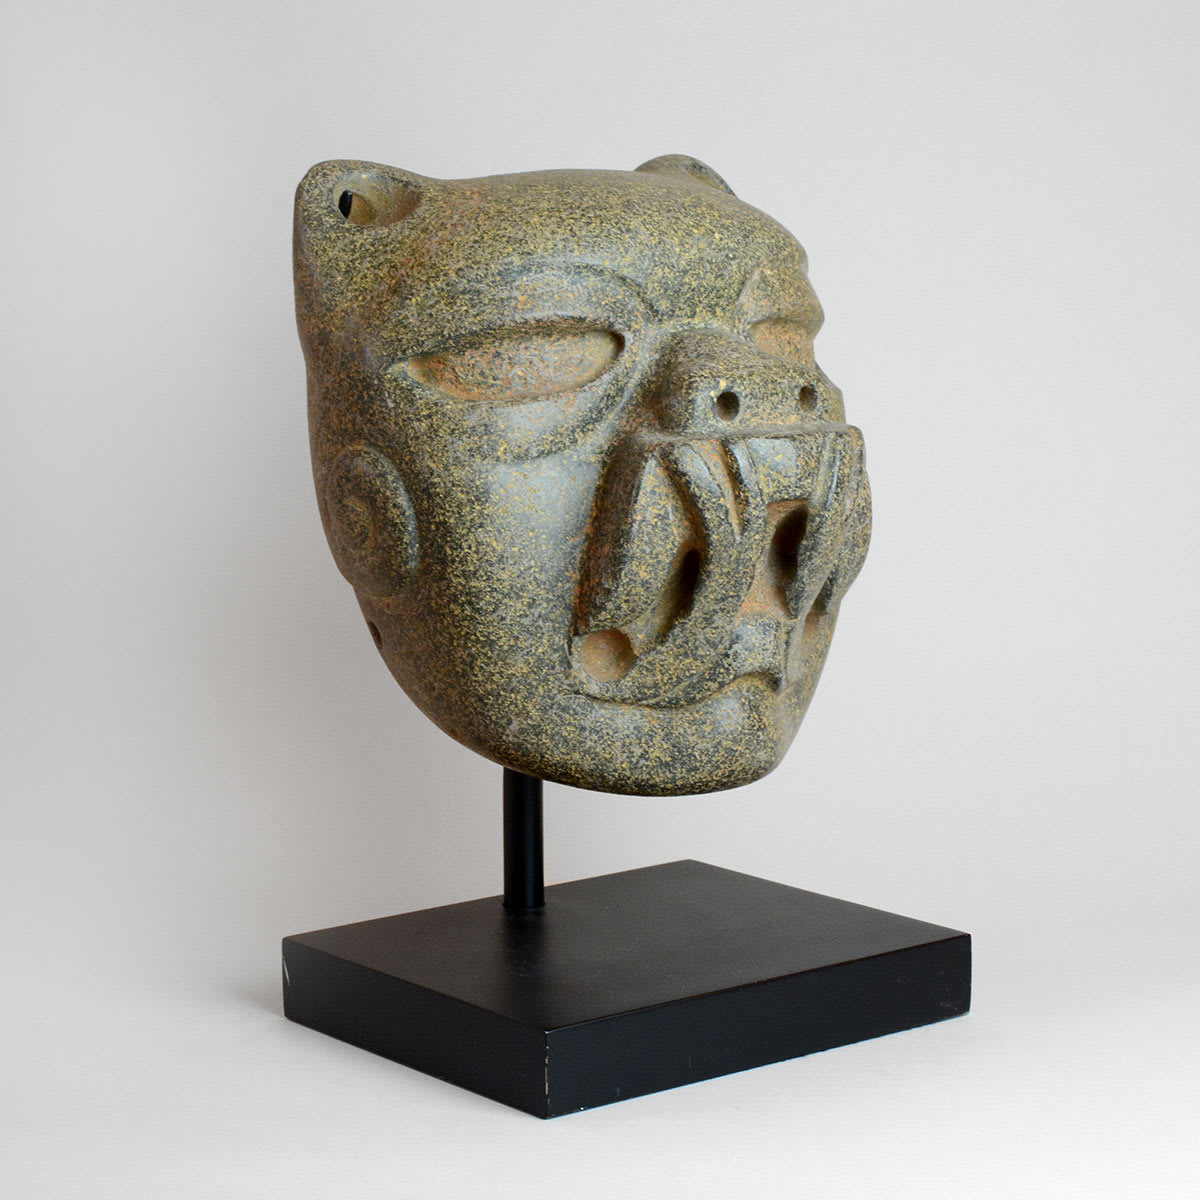 Olmec Stone Jaguar Head, 900 BCE - 500 BCE | Barakat Gallery